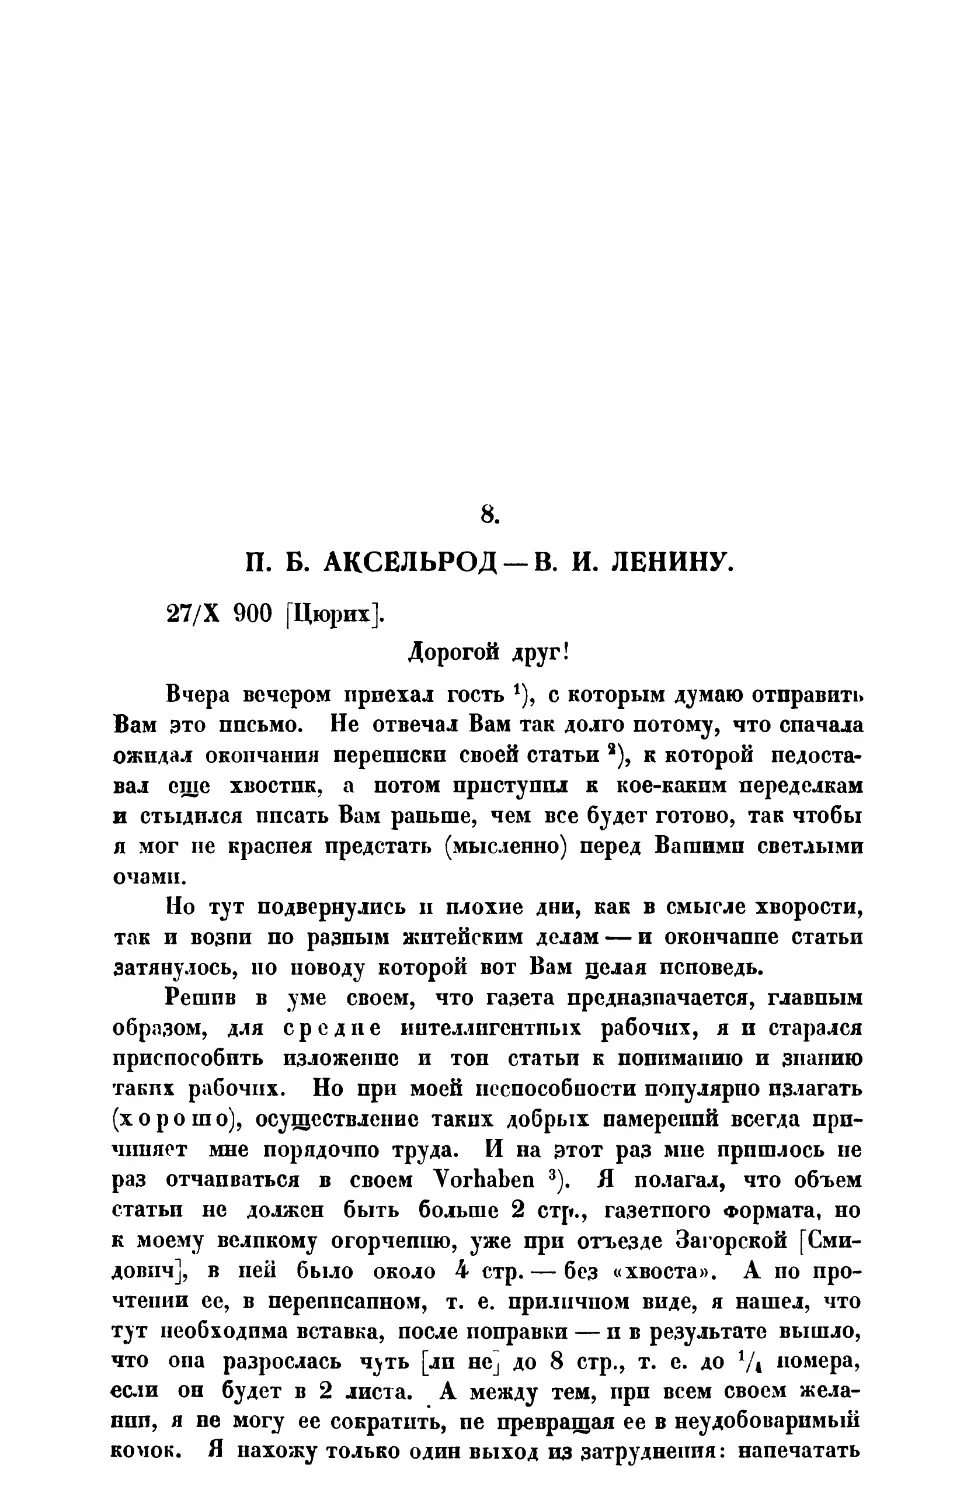 8. П. Б. Аксельрод. — Письмо  В. И. Ленину от 27 X 1900 г.